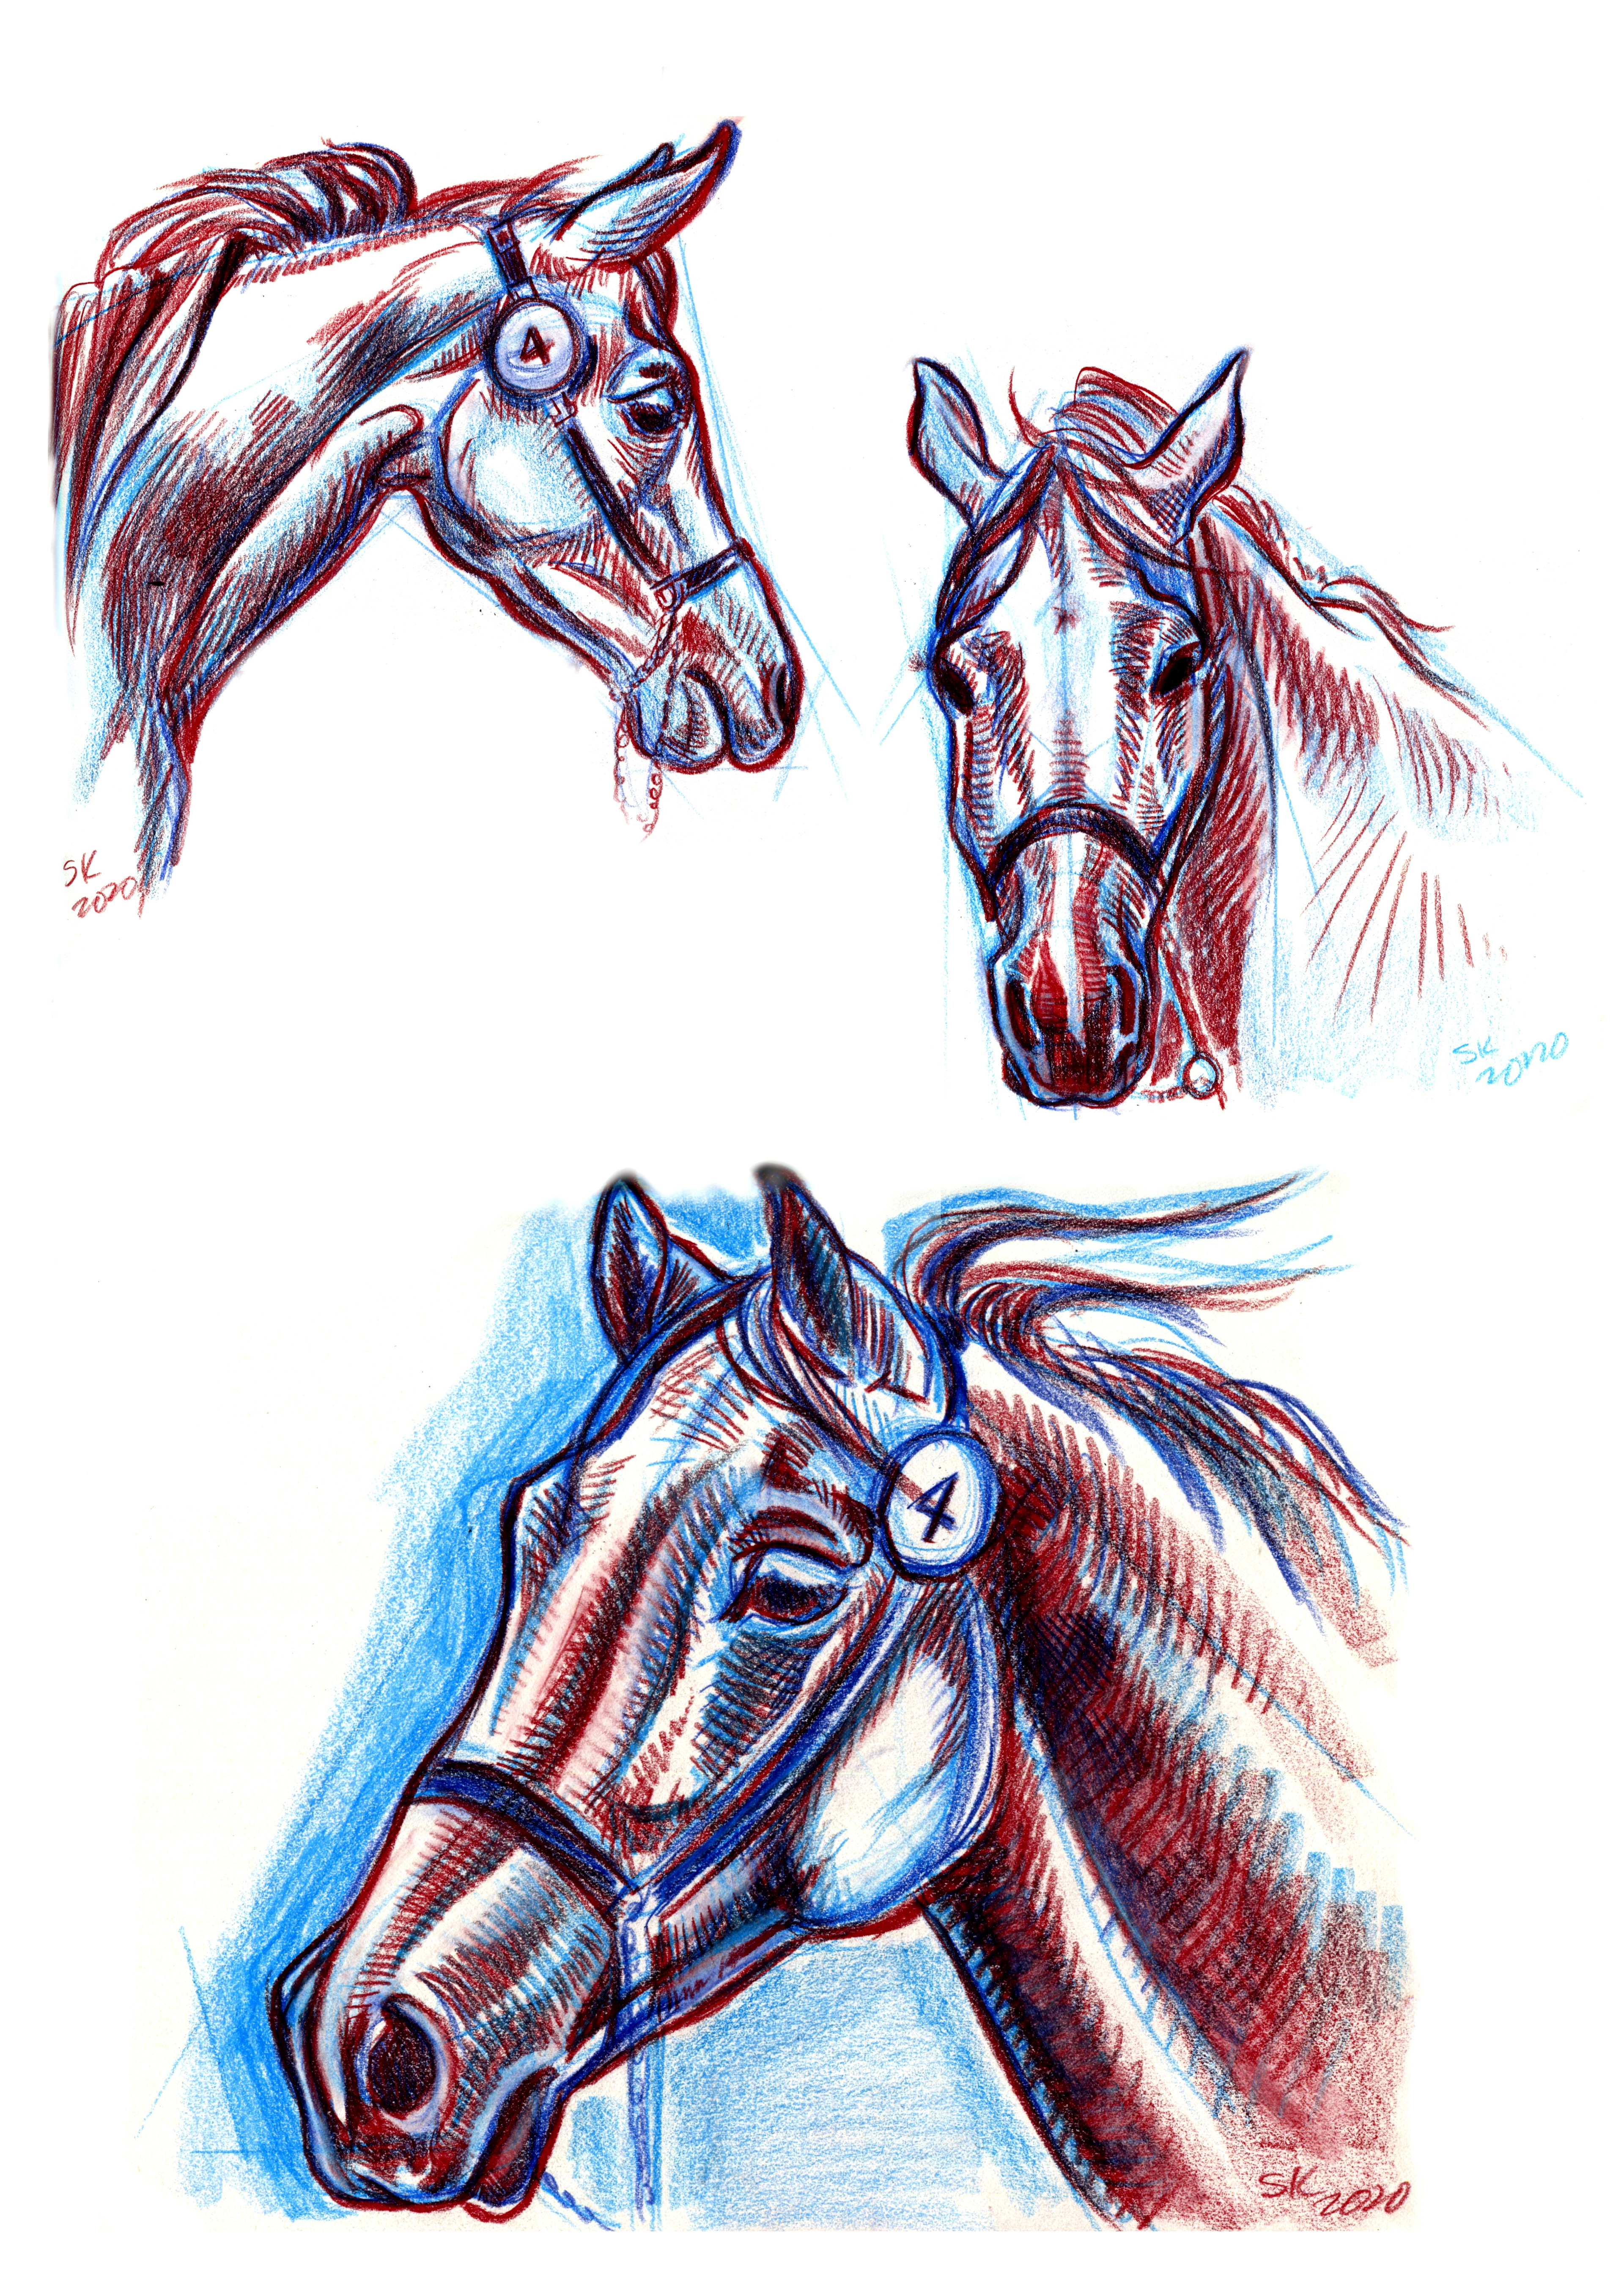 Three views of one Arab stallion.